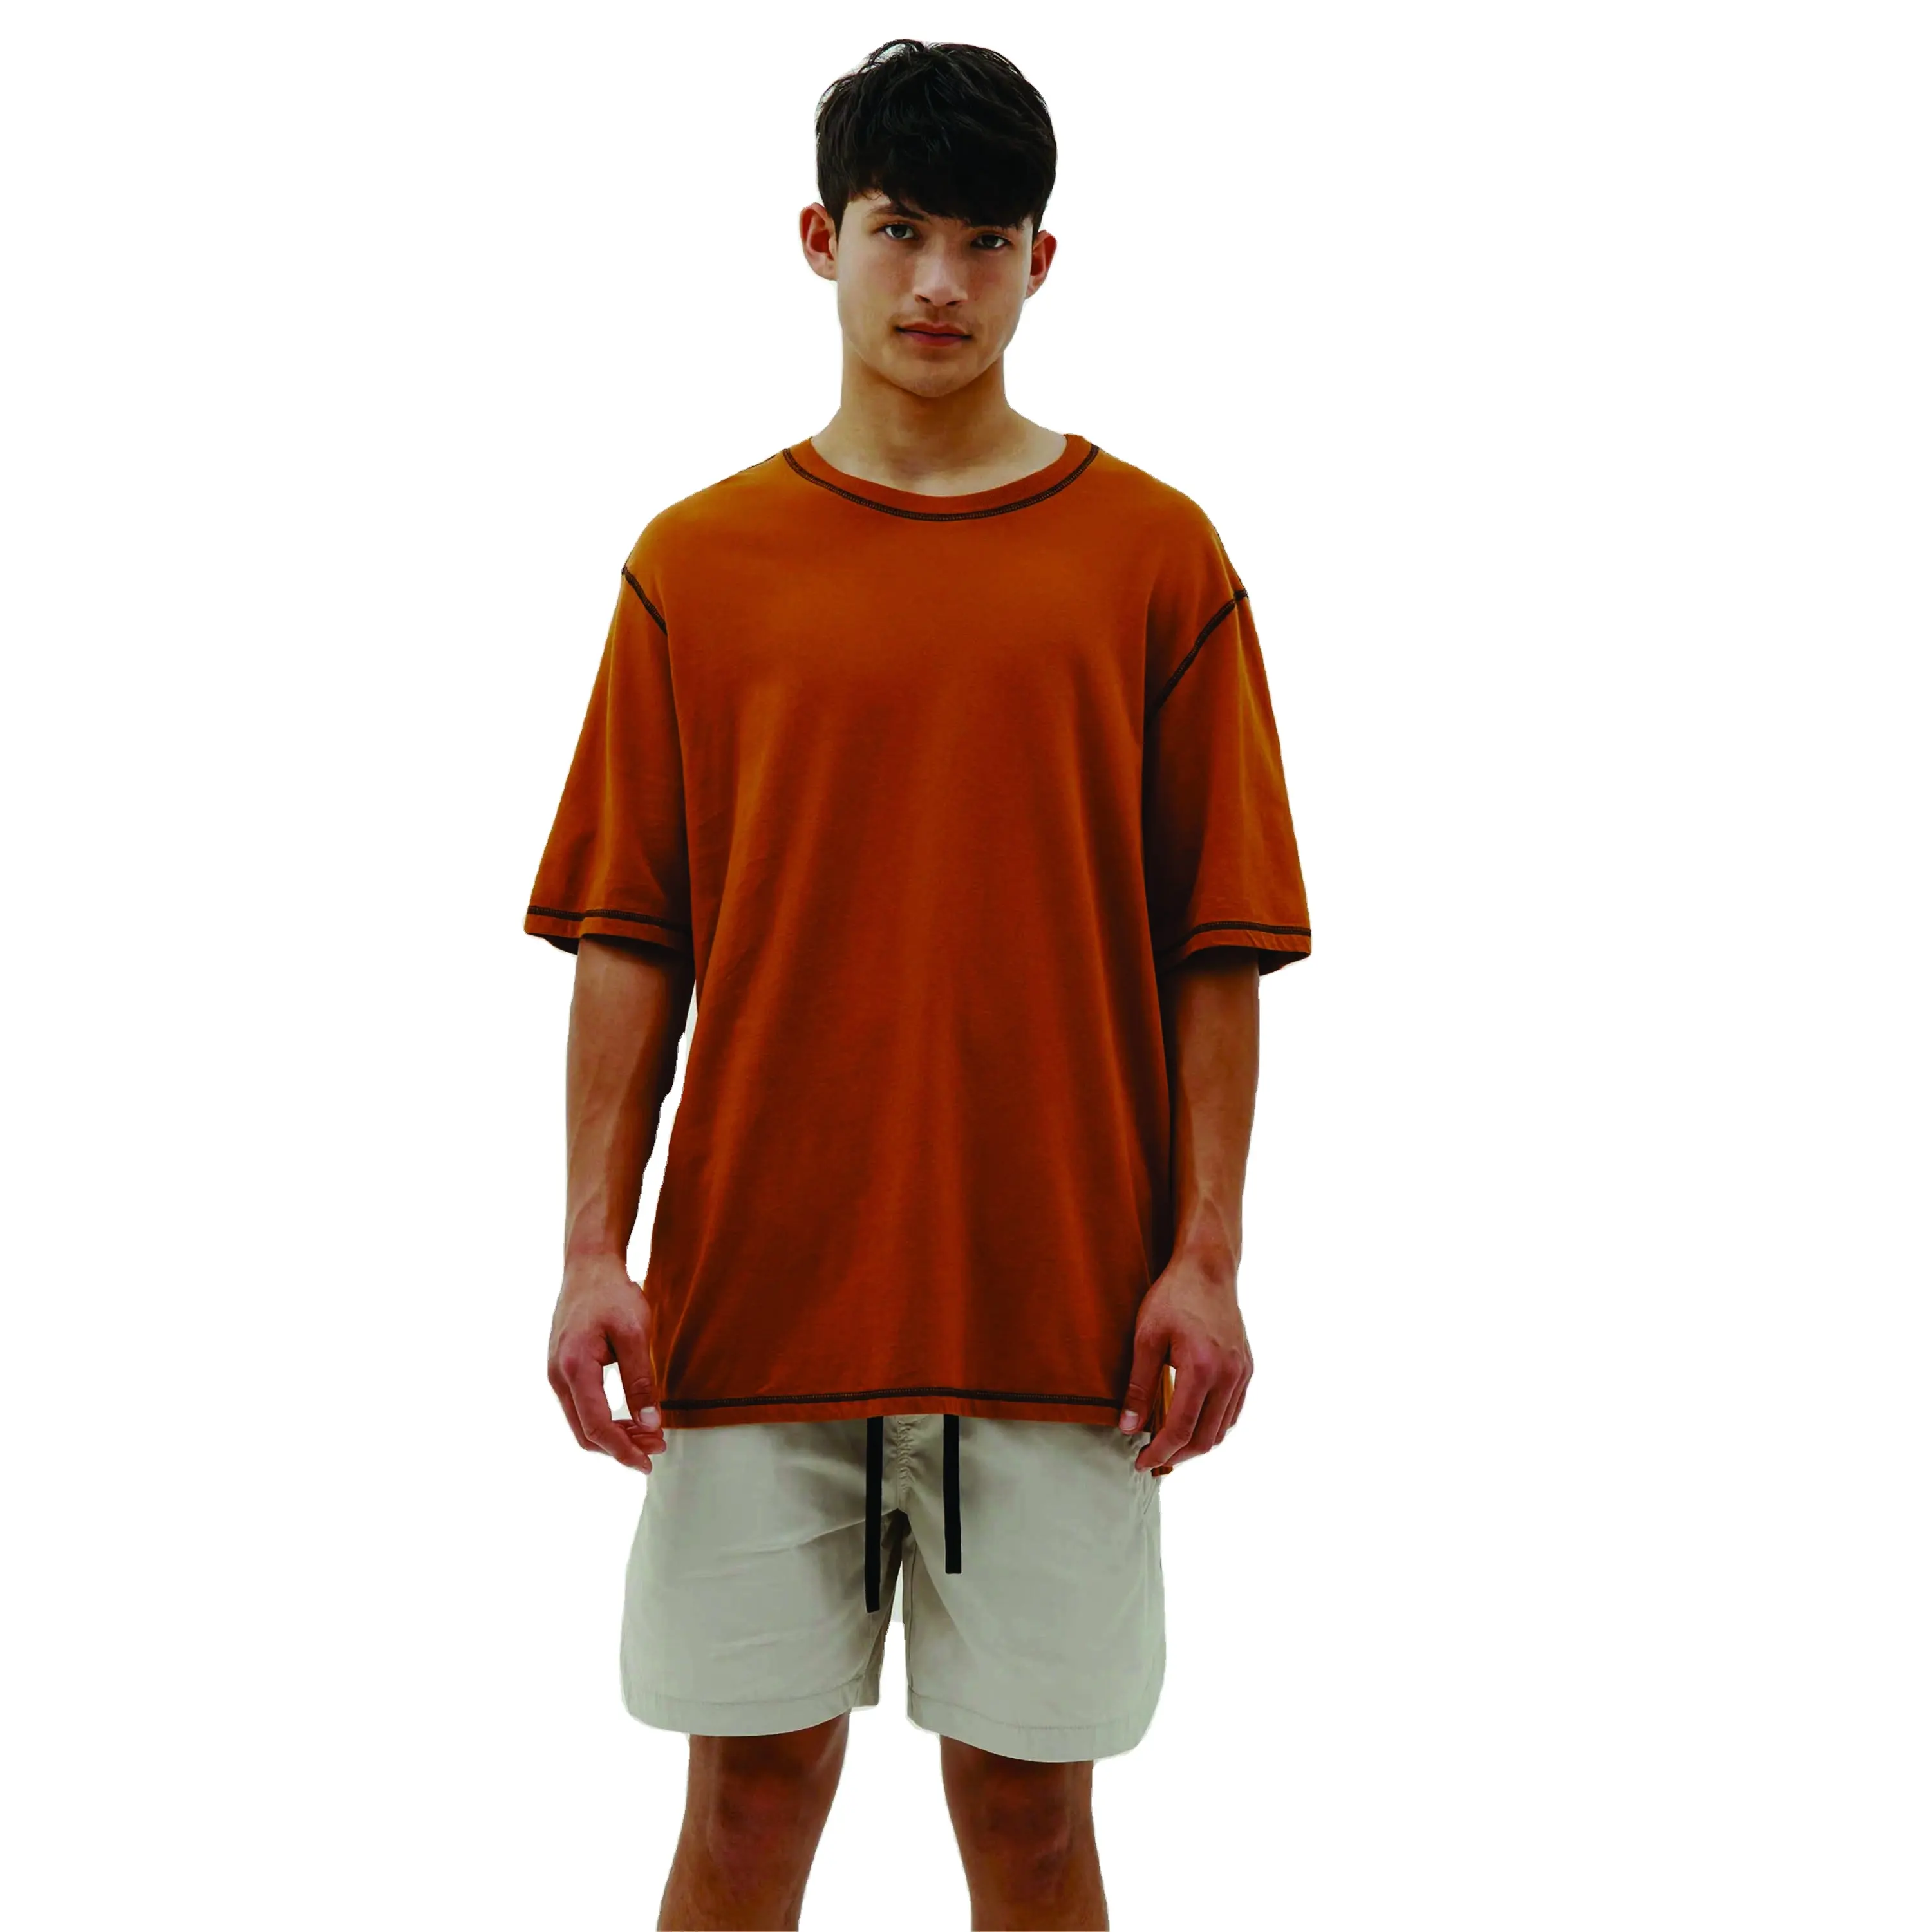 İndirimli fiyat özel Logo pamuk ekip boyun tamamen özelleştirilmiş kontrast yaka dikiş erkek t-shirt